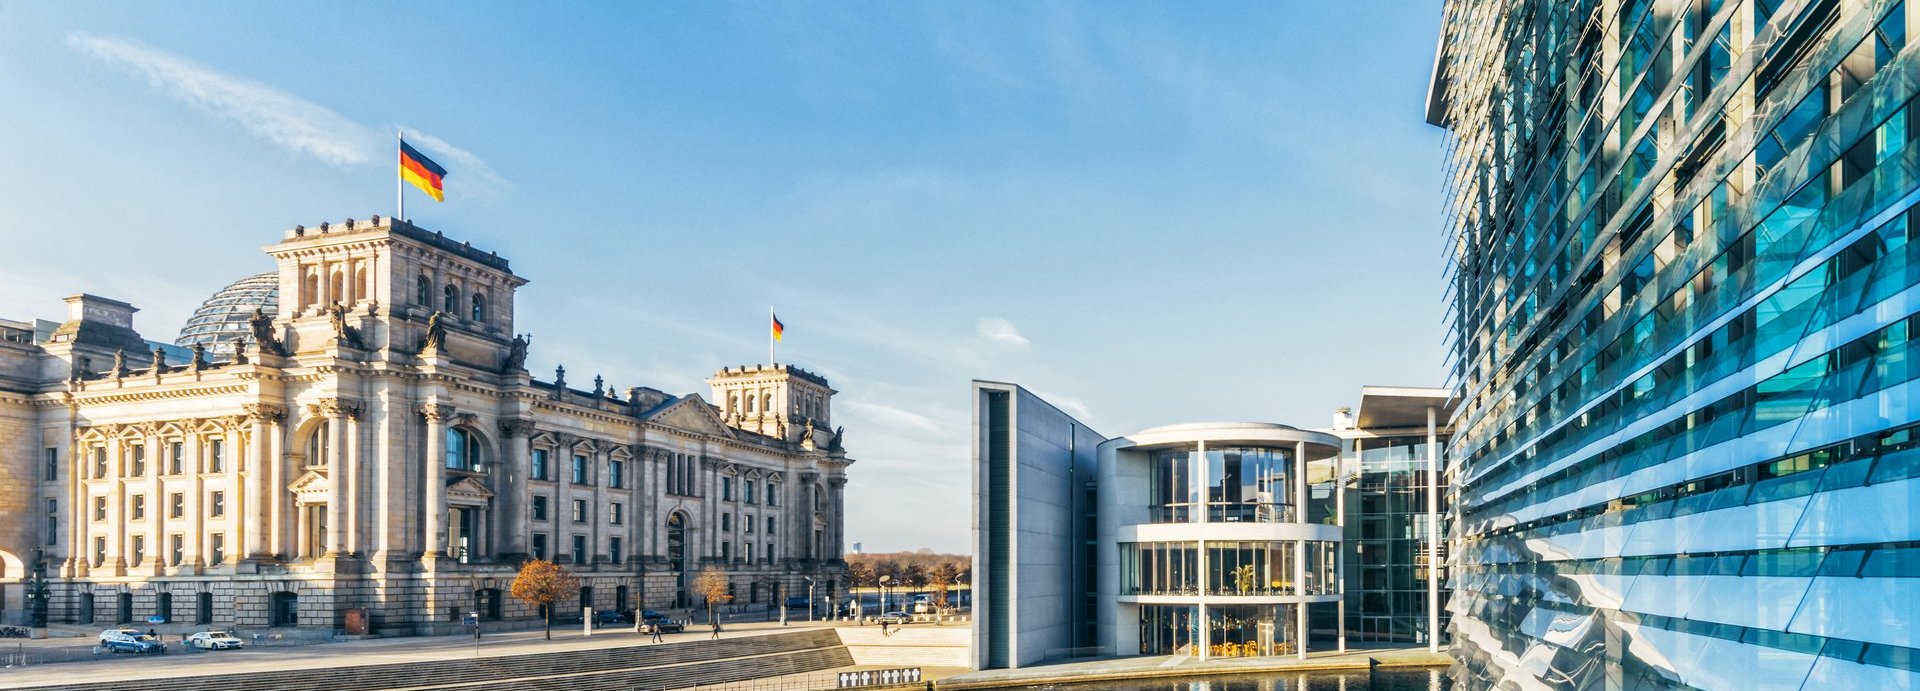 Fernansicht des Bundestags und weiterer Gebäude mit blauem Himmel und der Spree